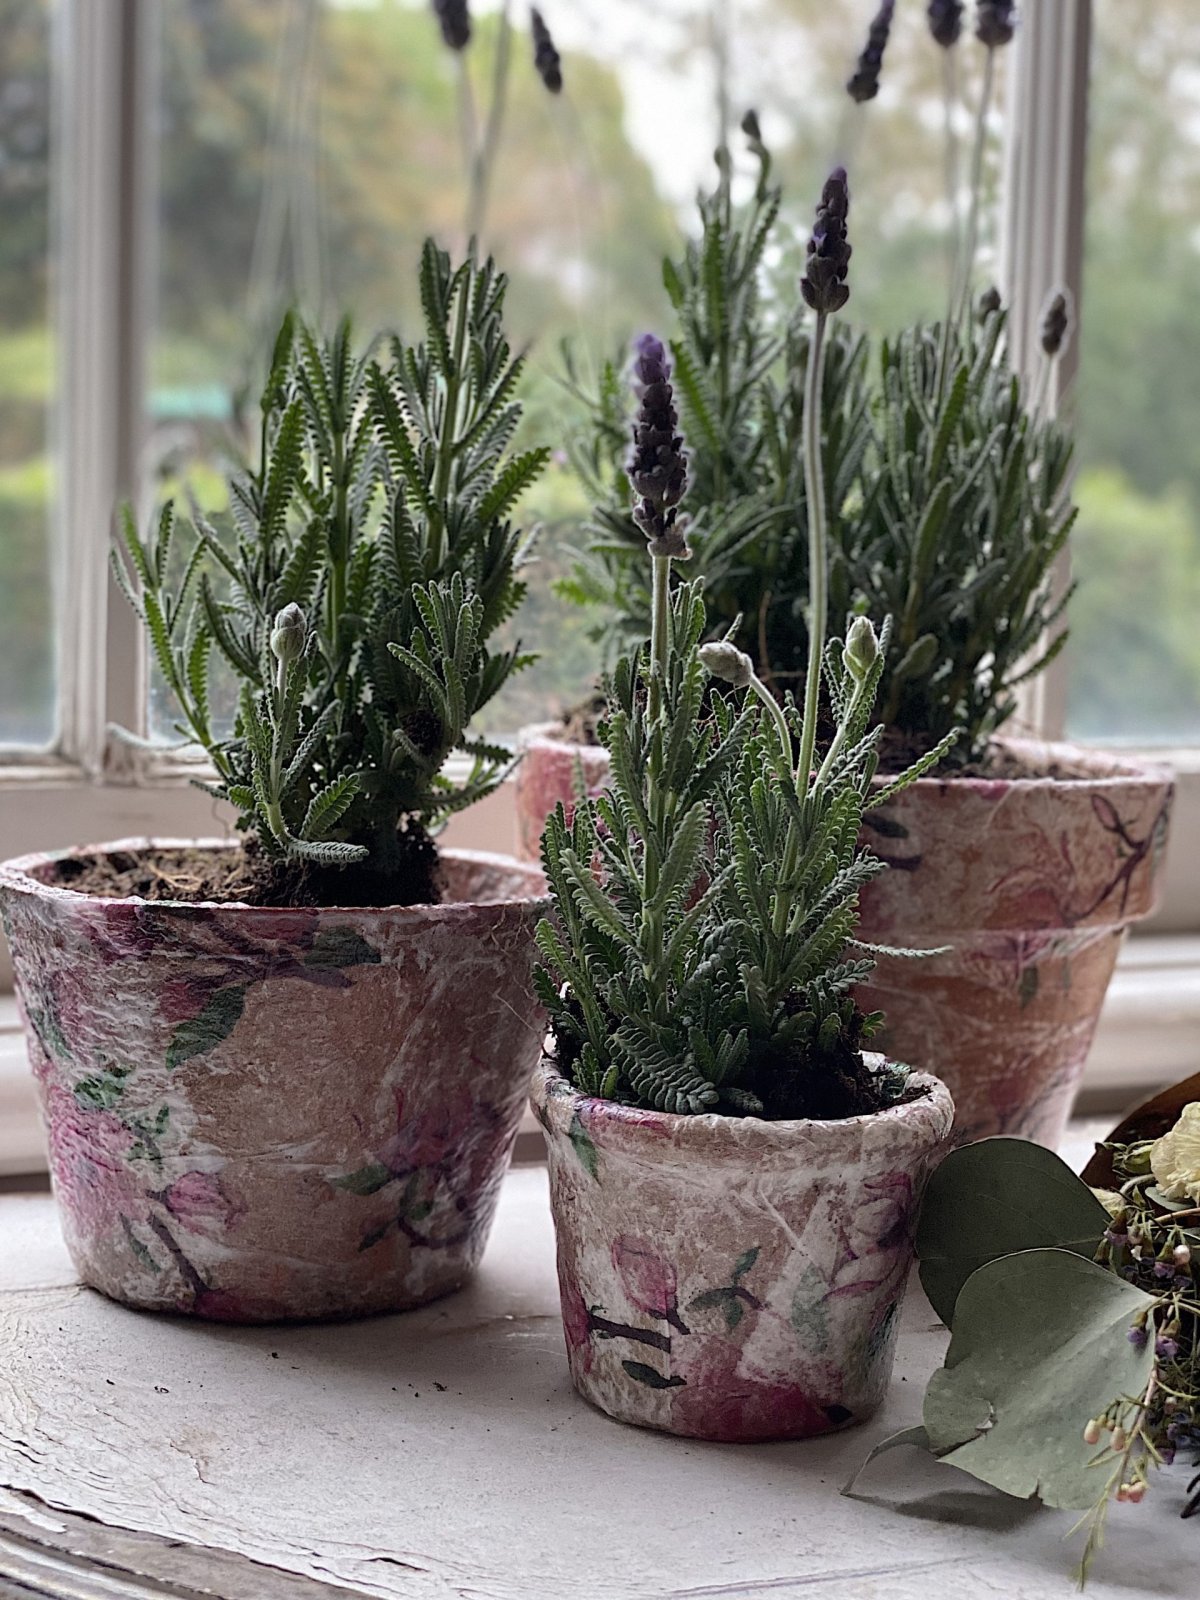 Decoupage Terra Cotta Pots with Lavender